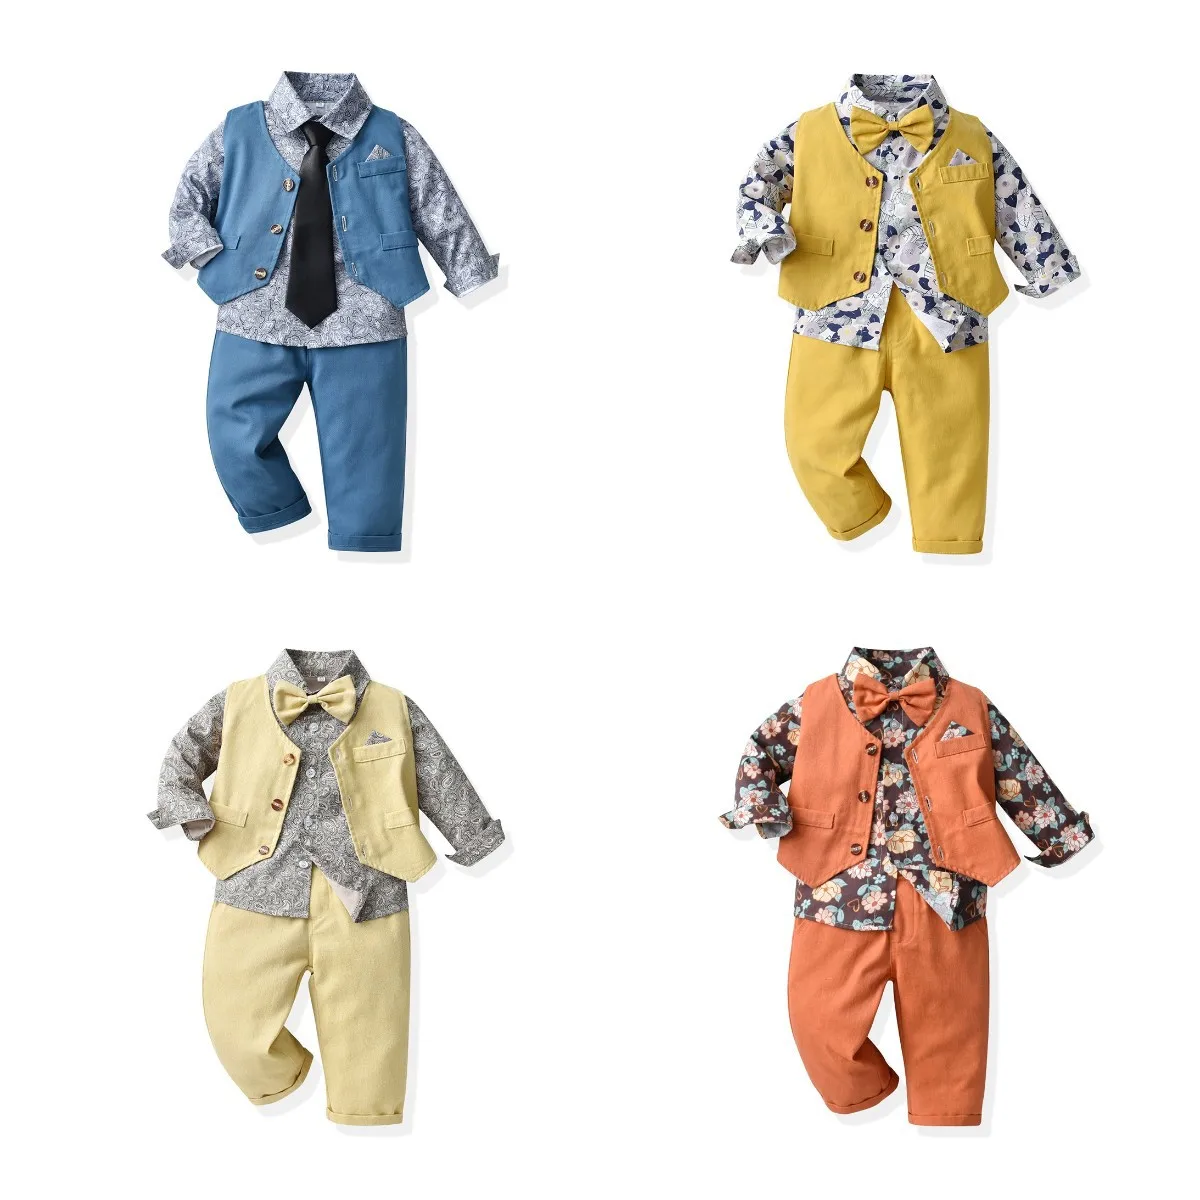 Осенняя одежда с цветочным рисунком для мальчиков, модная одежда с длинными рукавами для детей 1, 2, 3, 4, 5, 6, 7 лет, однотонный жилет, брюки, одежда для дня рождения малыша